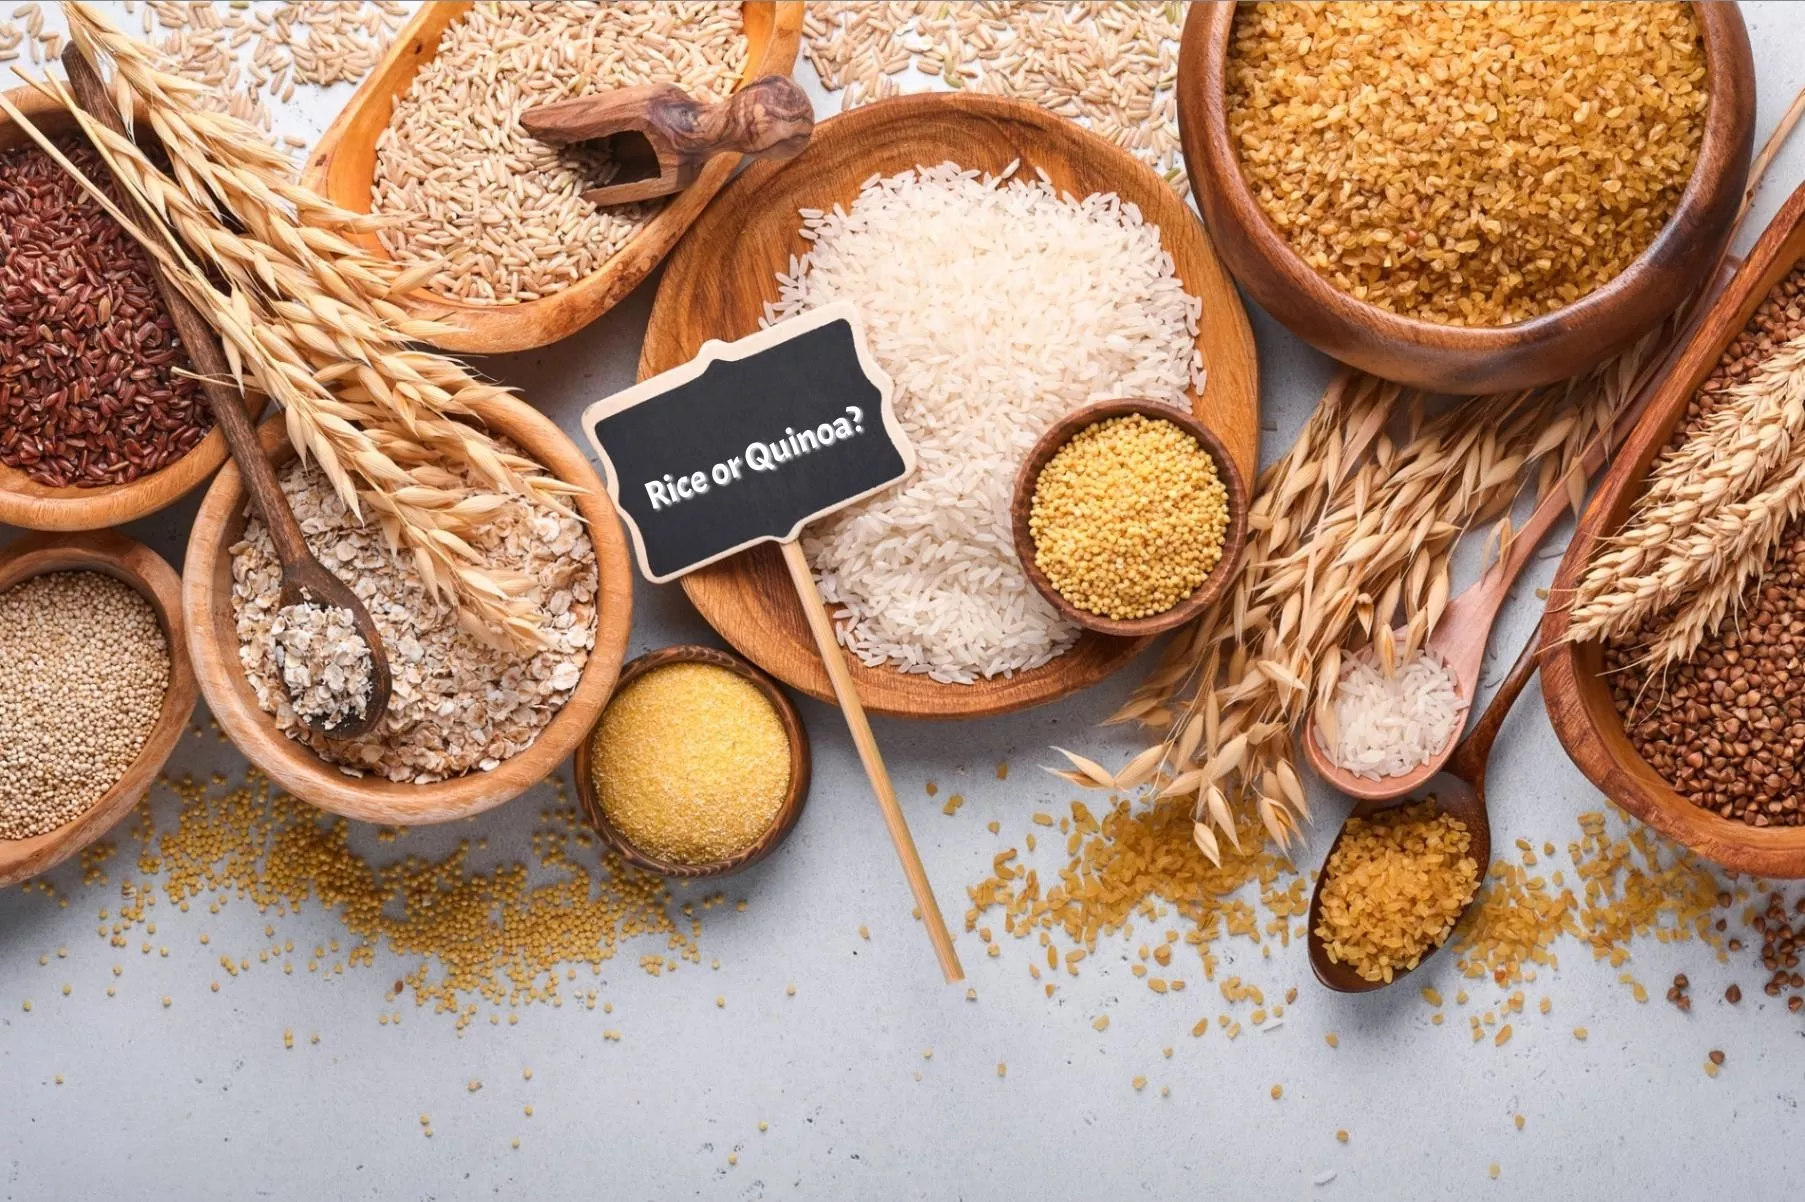 الأرز أو الكينوا – ما هو الخيار الأكثر صحة؟